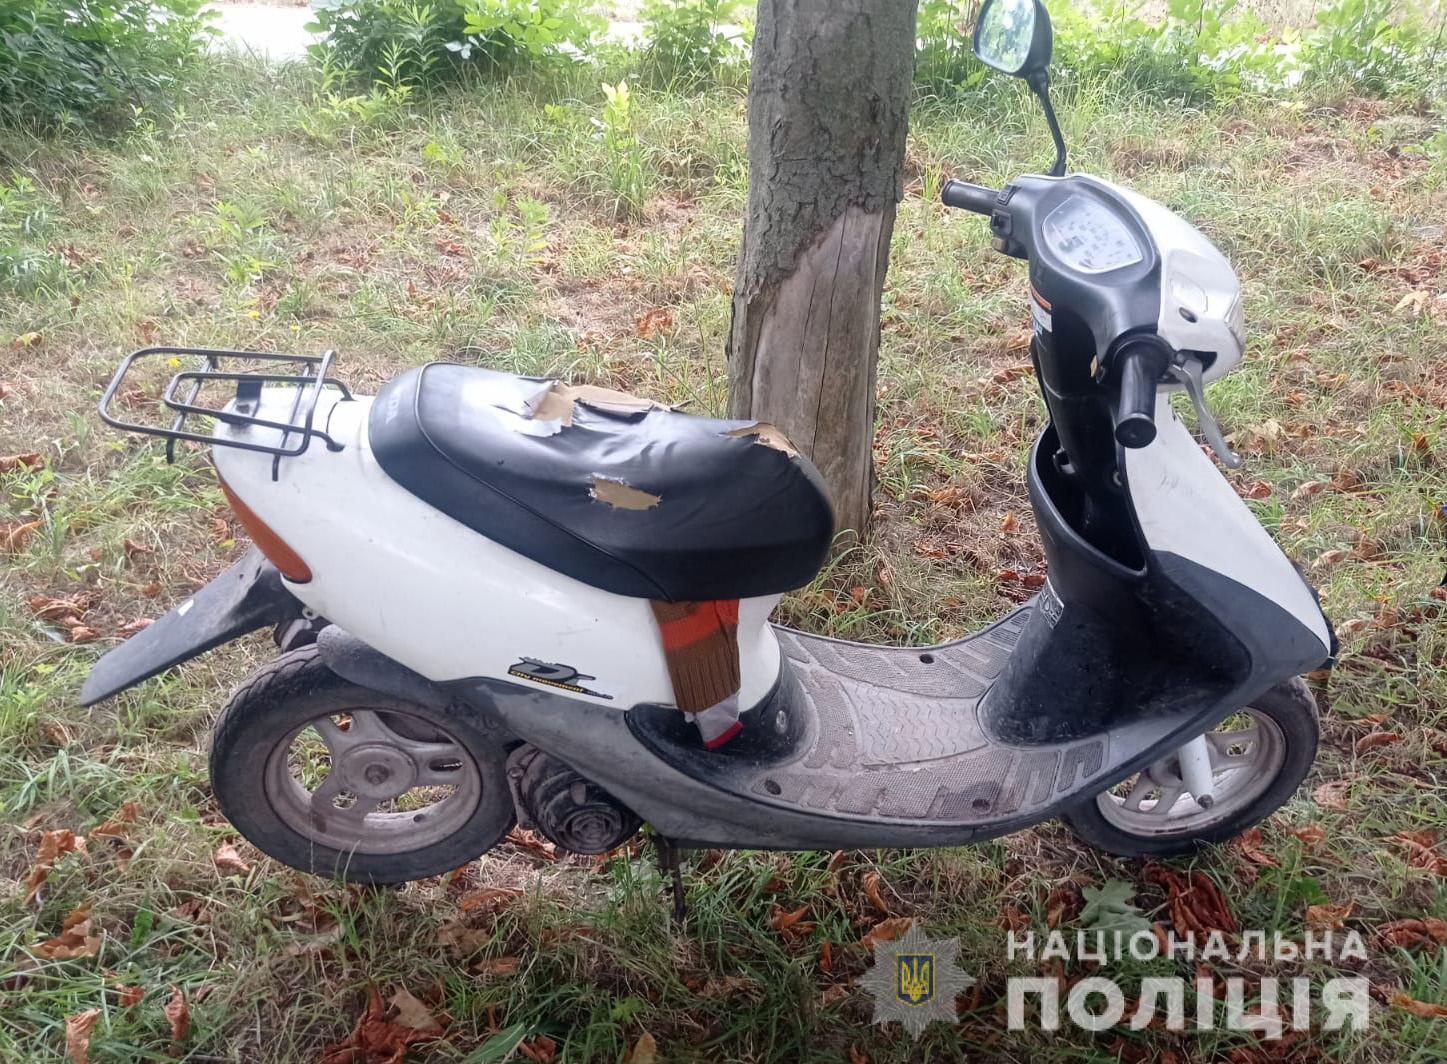 У Володимир-Волинському районі діти вкрали скутер у пенсіонера (фото)